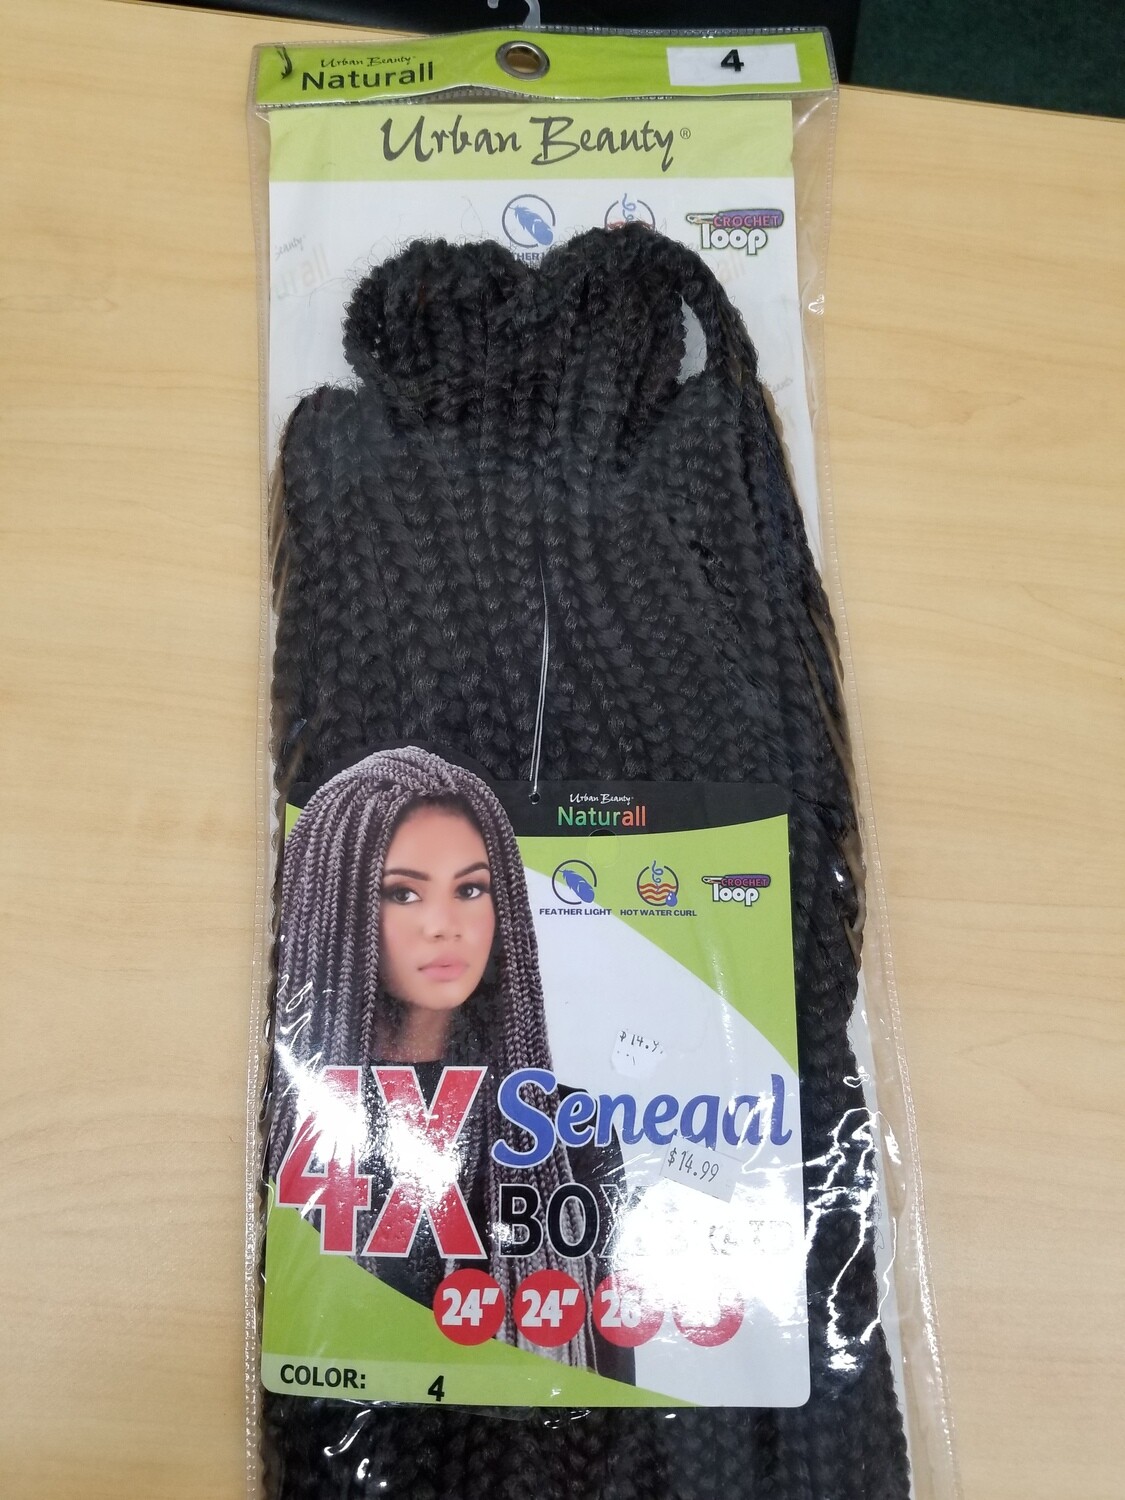 4 X Senegal Box Braid  U/ R Color 4 ,4 X